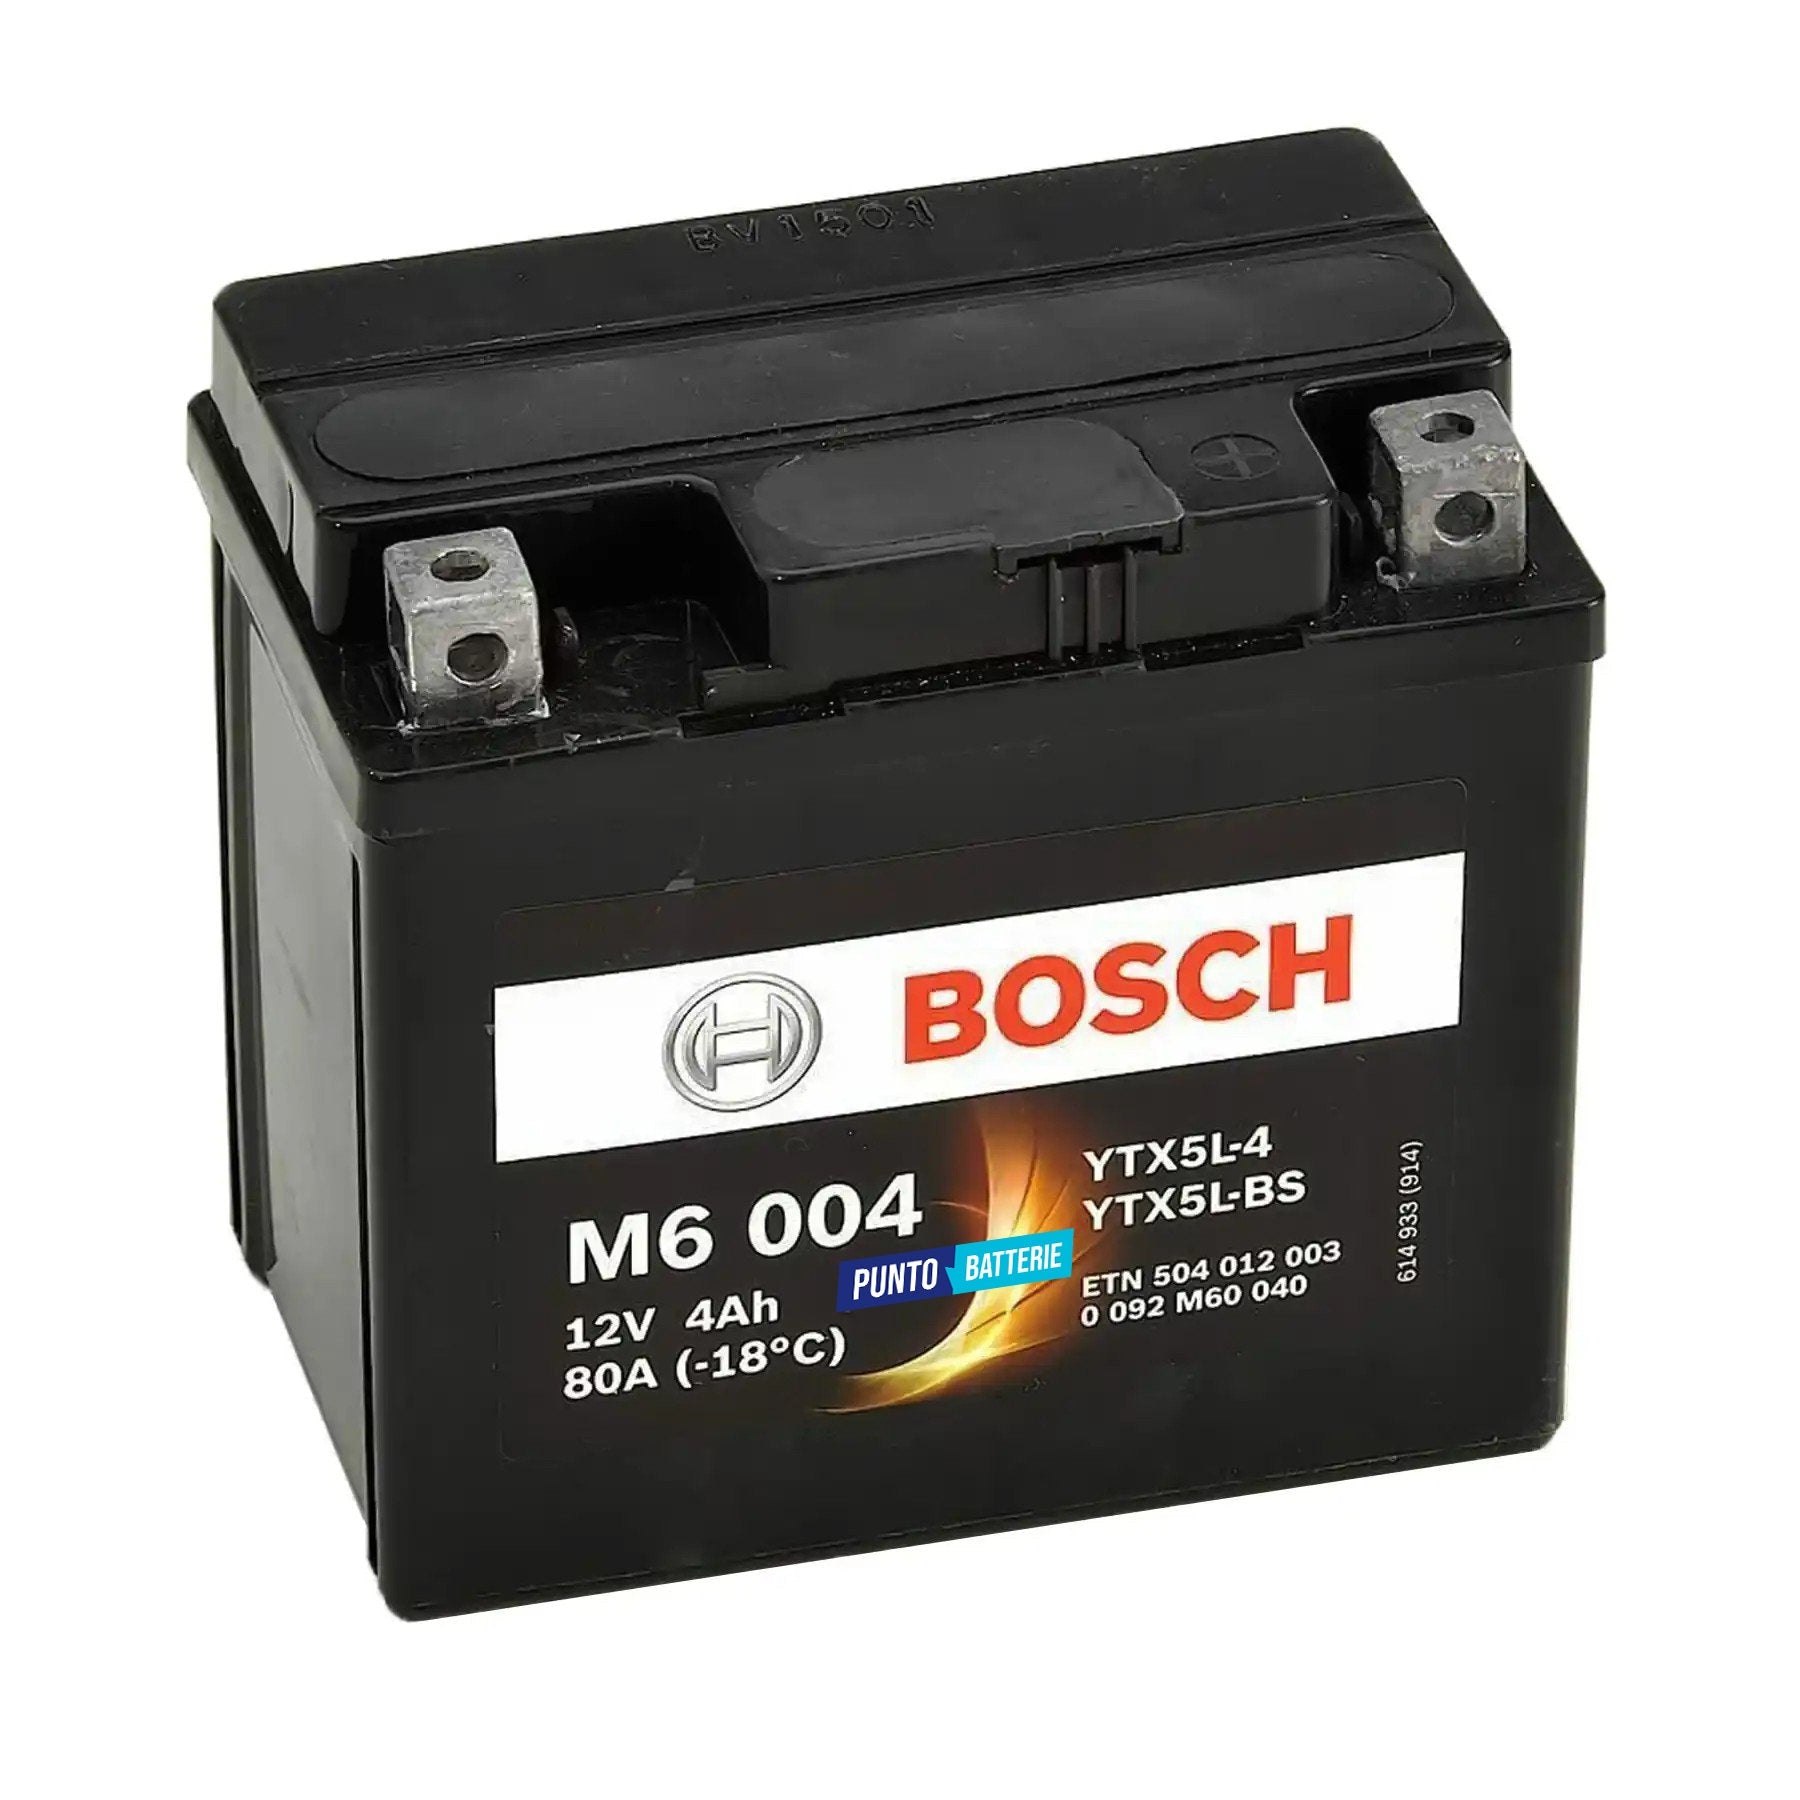 Batteria originale Bosch M6 M6004, dimensioni 165 x 130 x 176, polo positivo a destra, 12 volt, 4 amperora, 30 ampere. Batteria per moto, scooter e powersport.